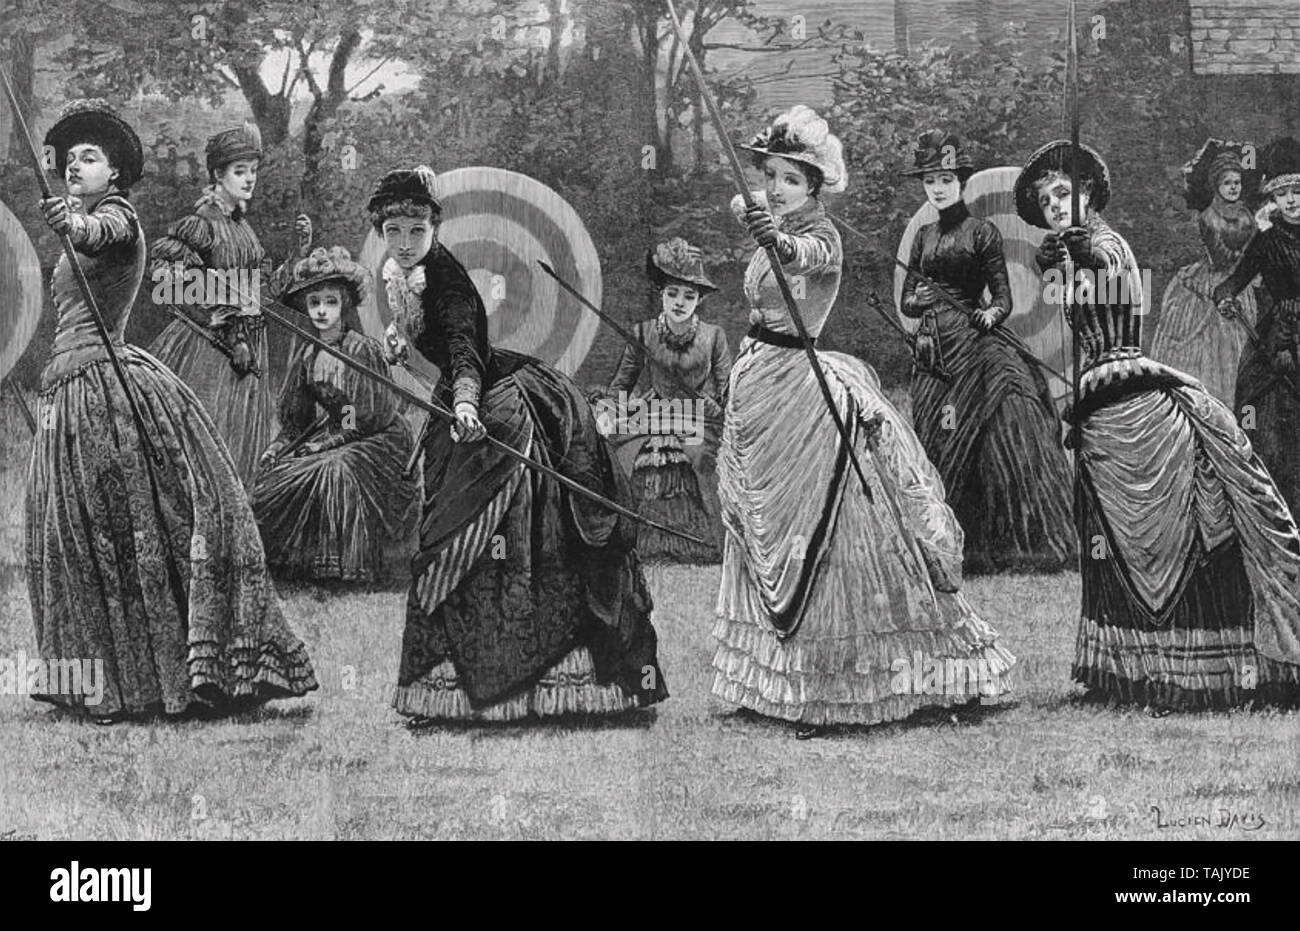 Compétition de tir à l'environ 1880 femmes Banque D'Images